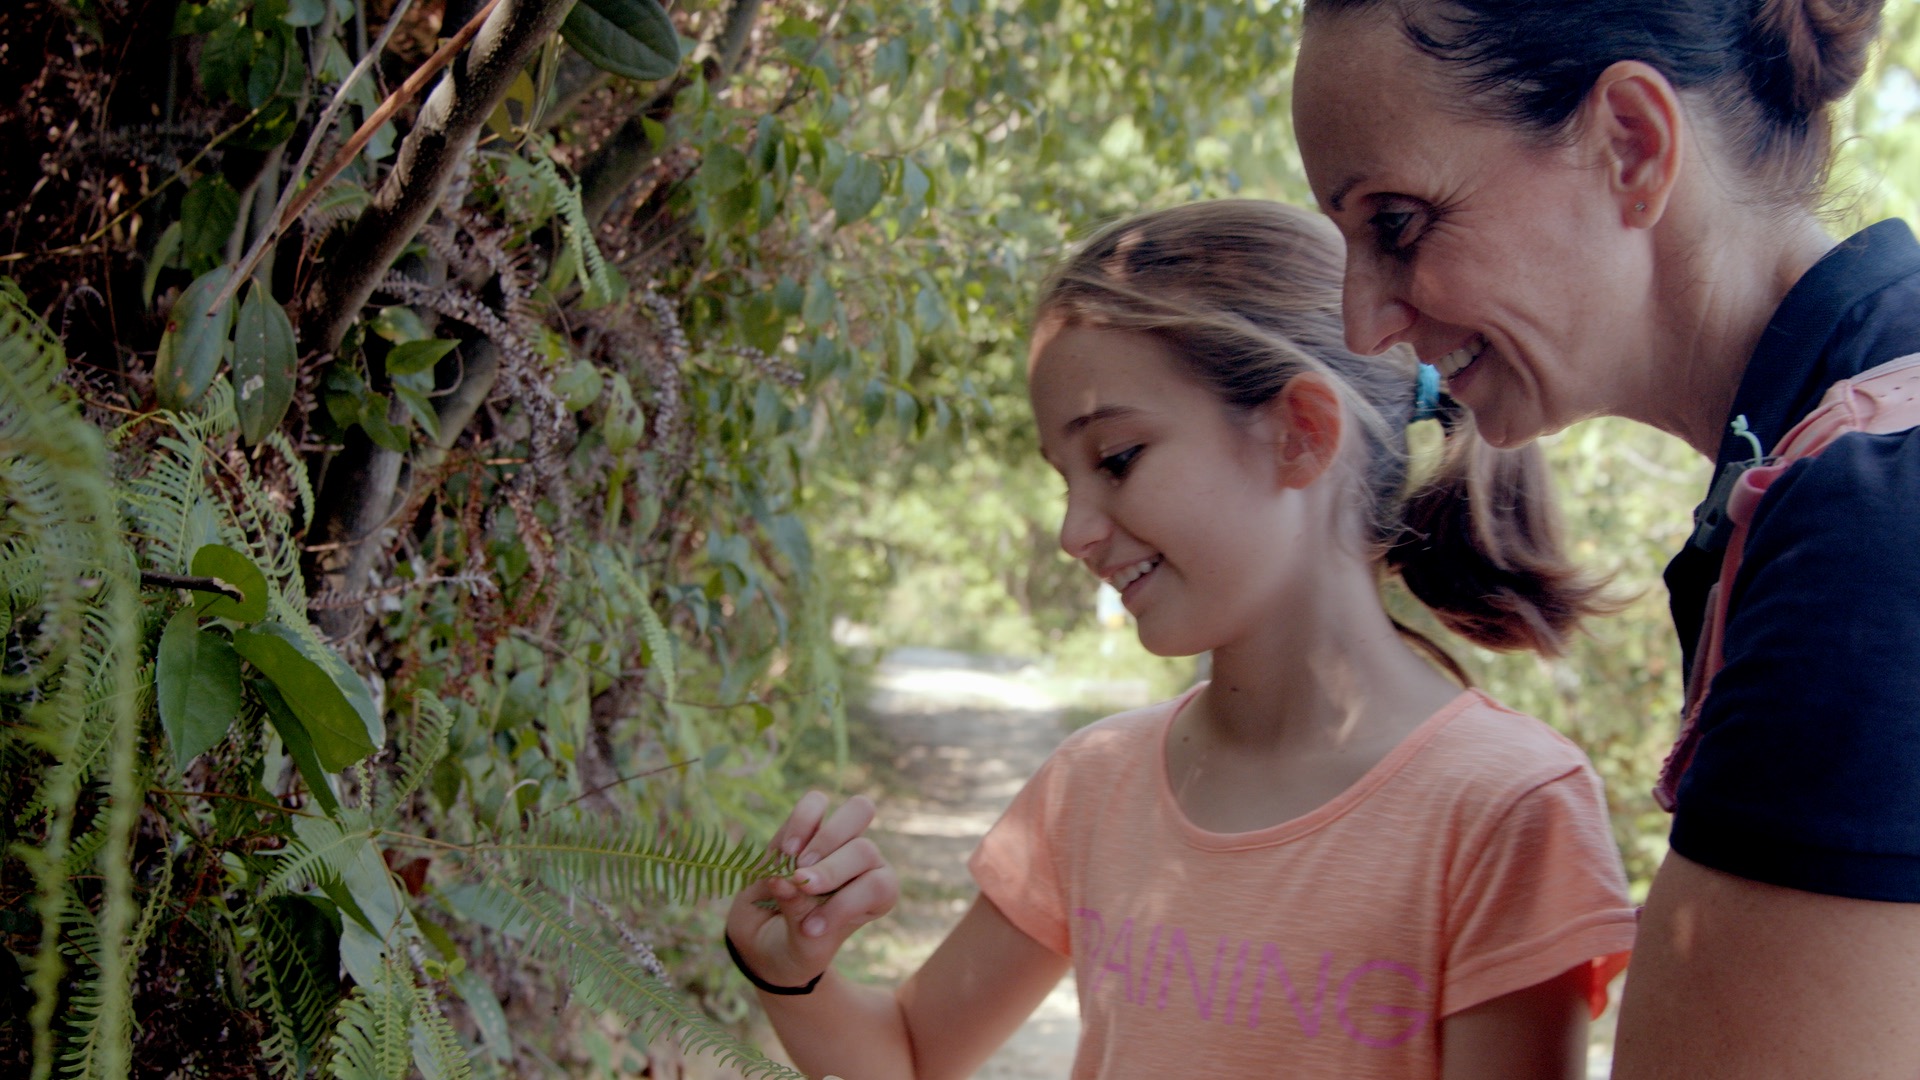 Sabrina 和 Clement 閒時喜歡帶女兒 Kelia 親親大自然，遊走大嶼山山徑高峰。© Greenpeace